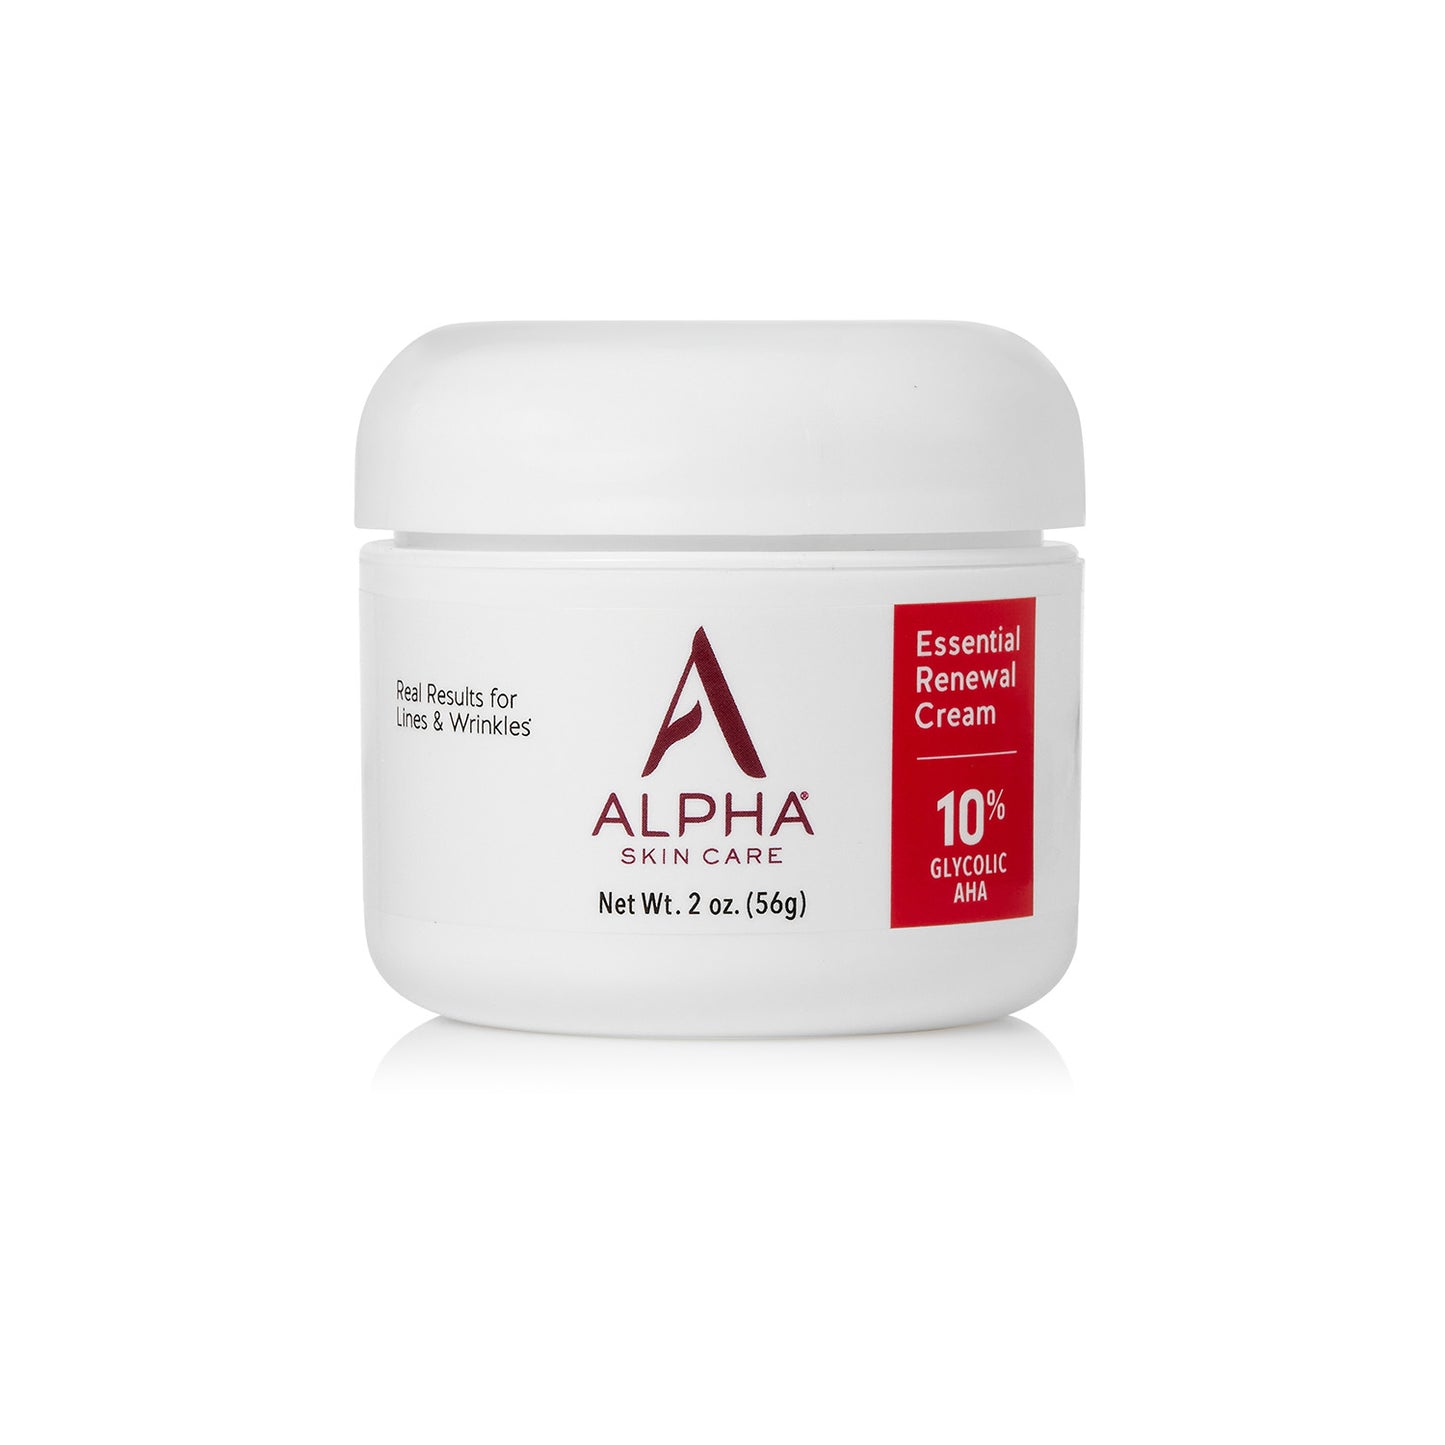 Essential Renewal Cream 10% Glycolic AHA